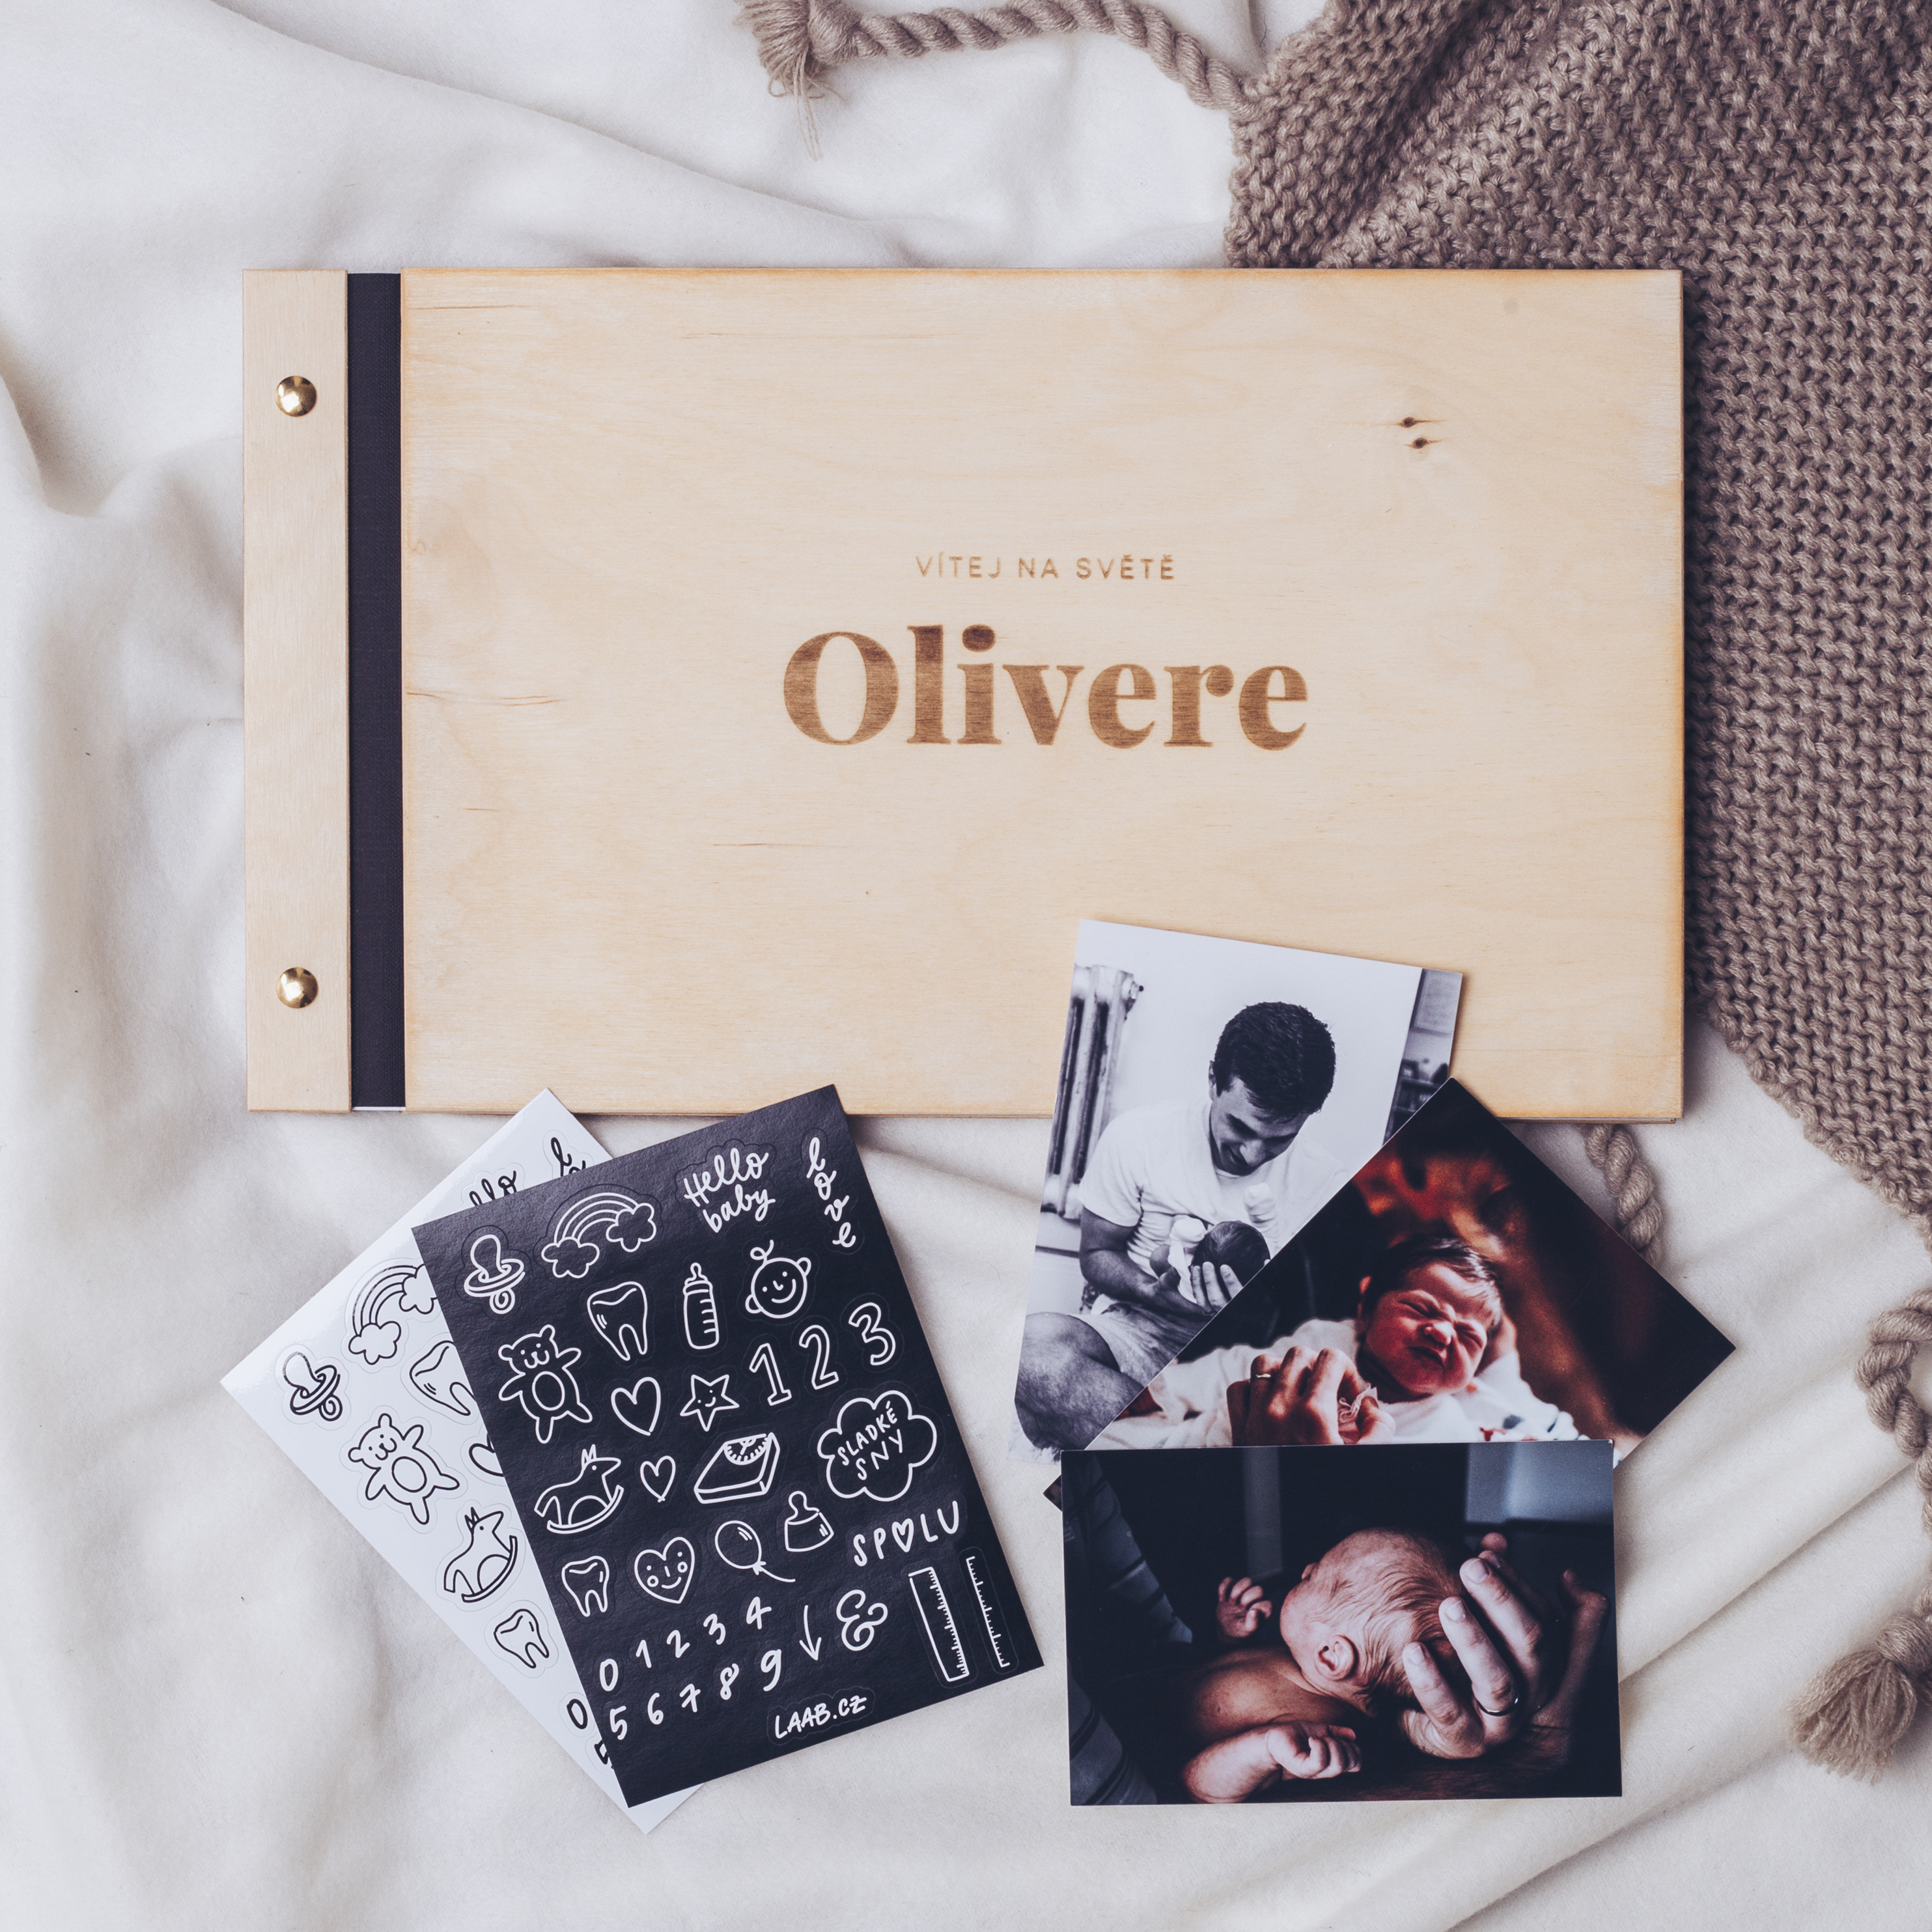 dřevěné fotoalbum Oliver: FORMÁT FOTOALBA na šířku, POČET LISTŮ 30, FORMÁT FOTOALBA čtverec, POČET LISTŮ 20, BARVA LISTŮ černá